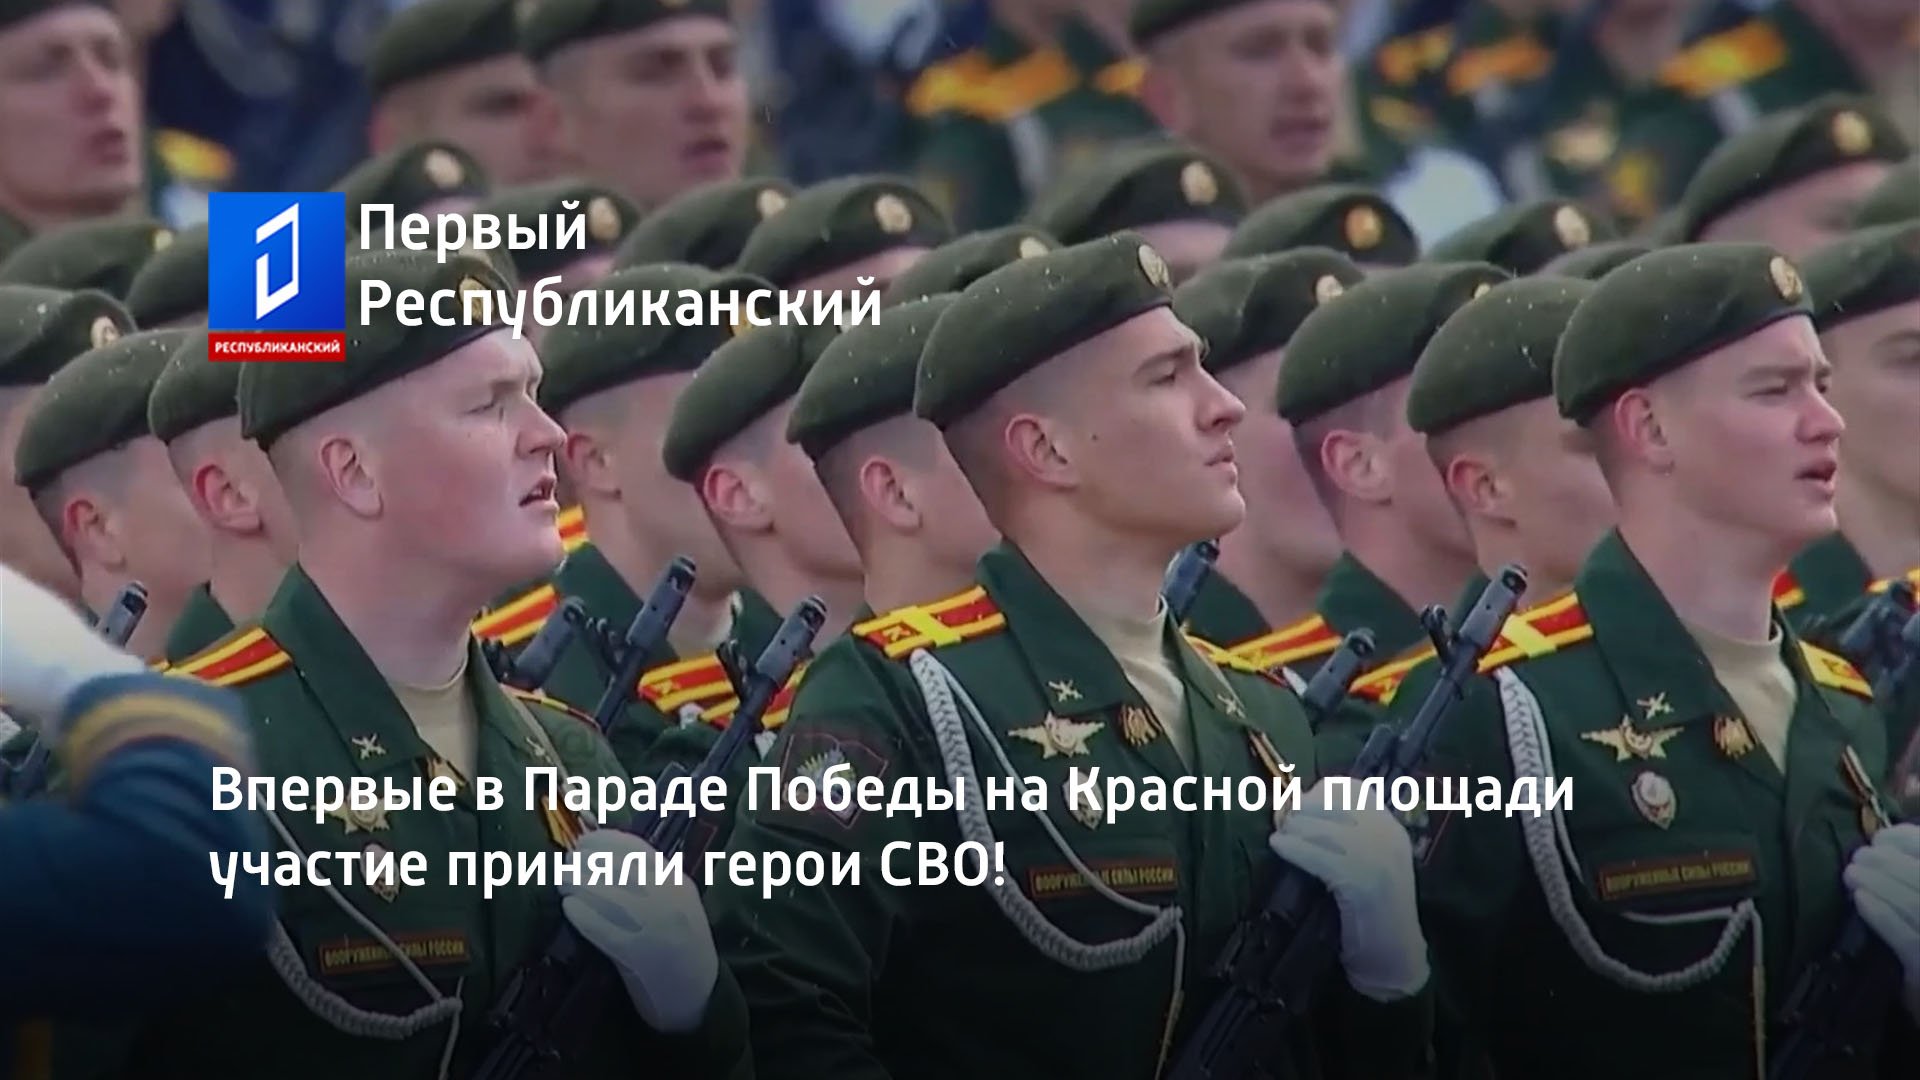 Впервые в Параде Победы на Красной площади участие приняли герои СВО!